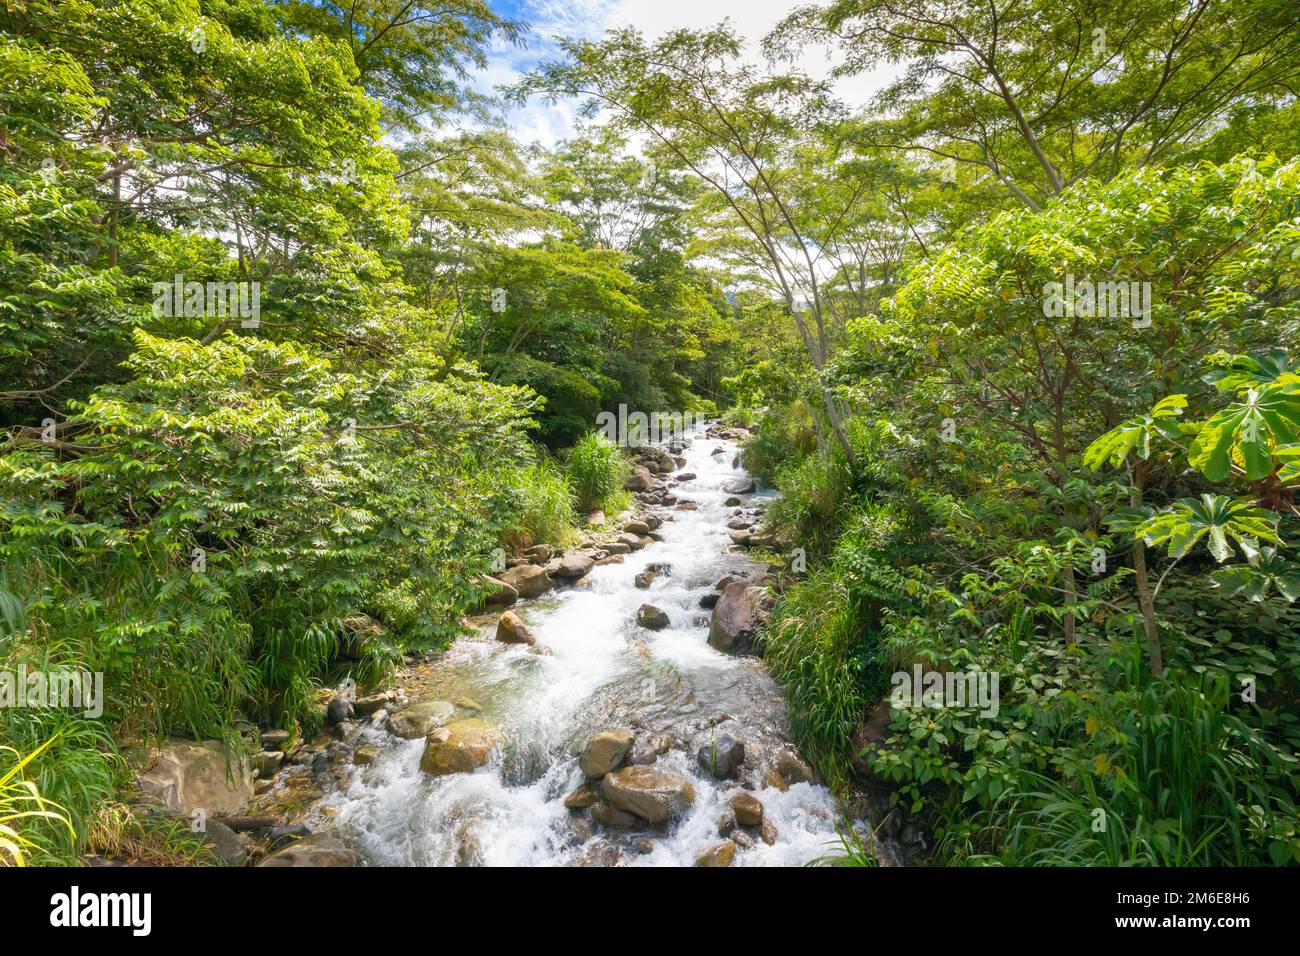 Costa Rica river in the jungle Stock Photo